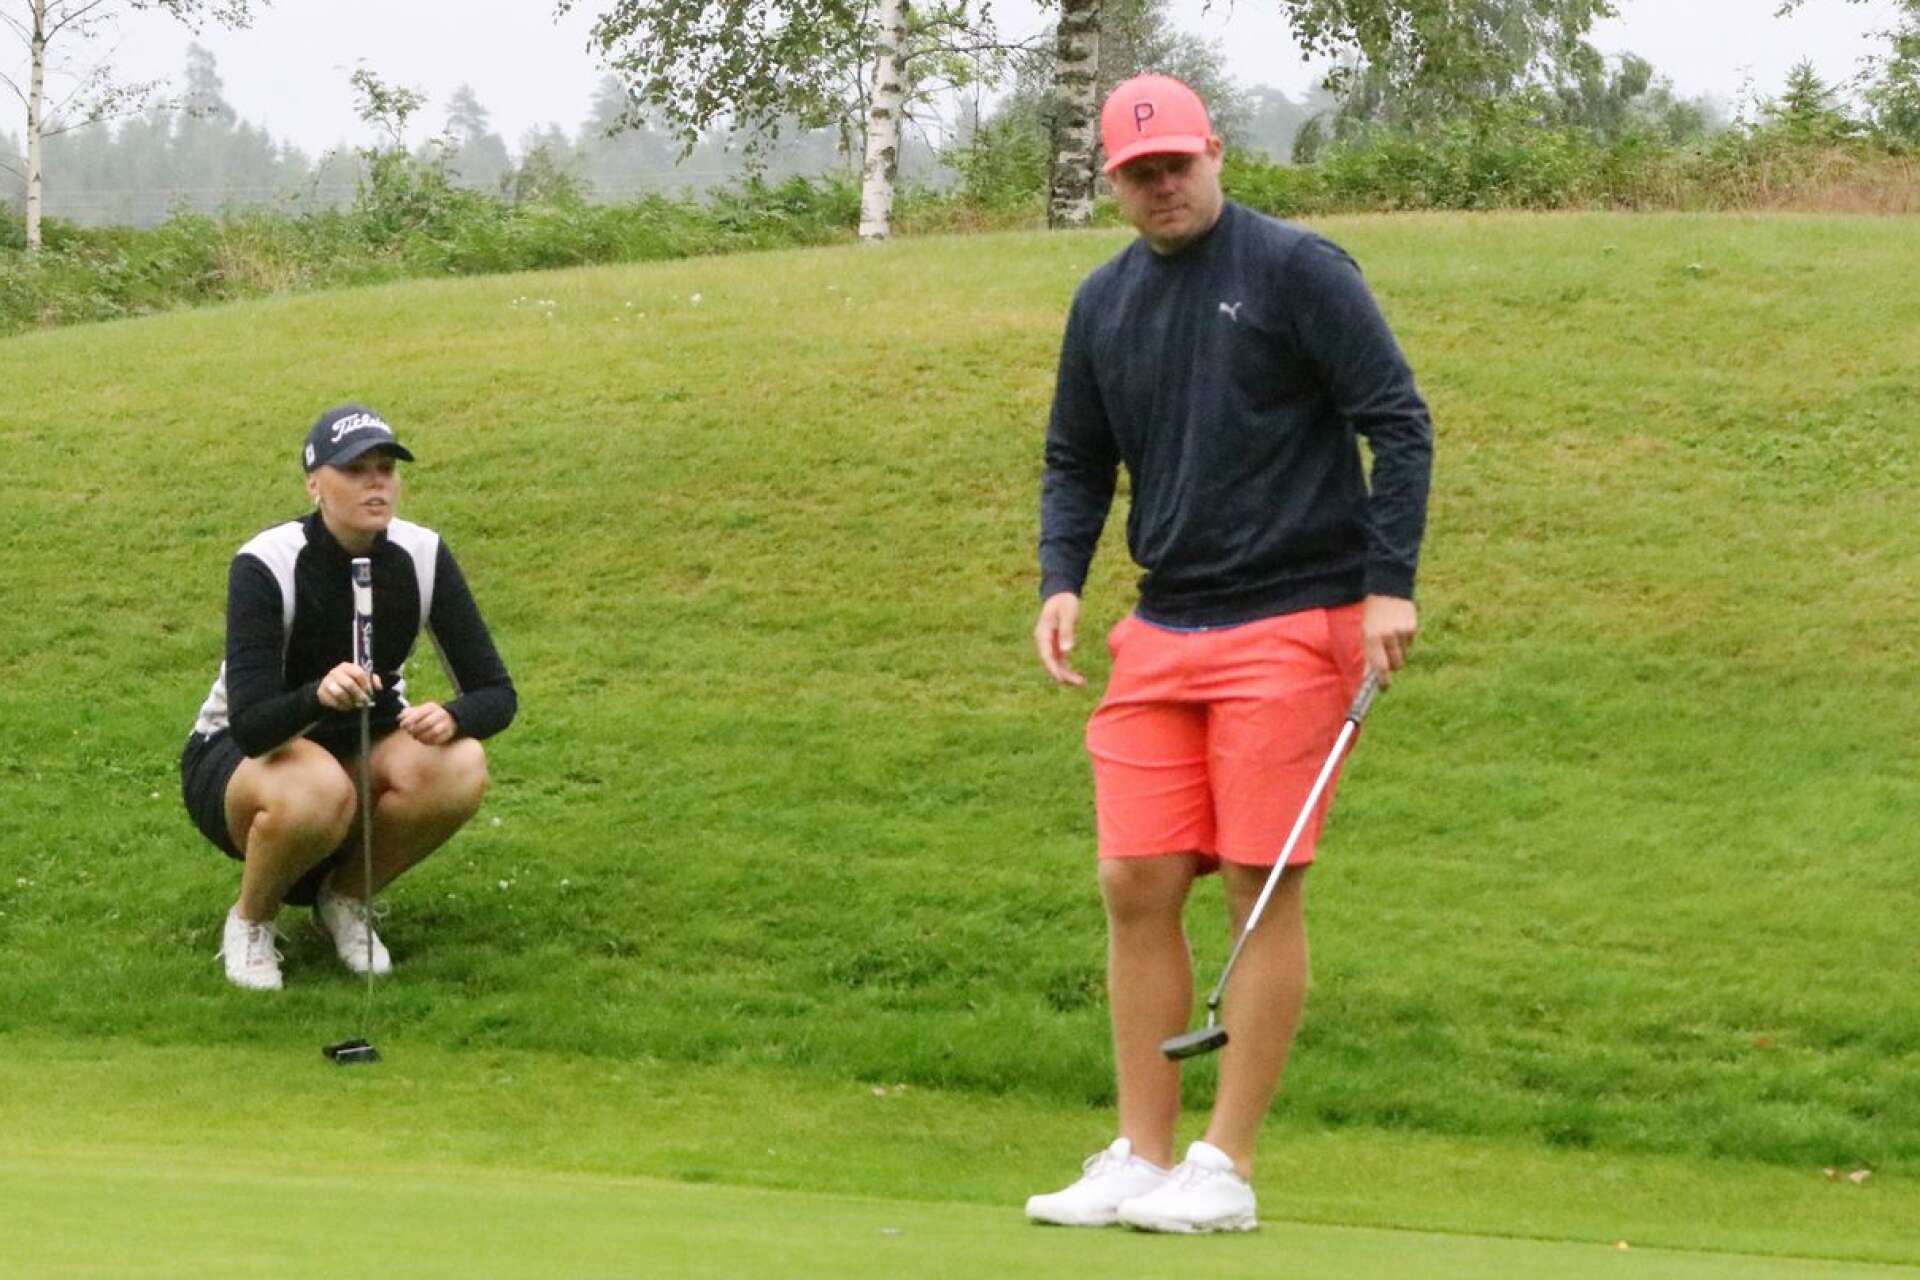 Golfproffset Jessica Karlsson, som nyligen blev tvåa på en Europatourtävling i tyska Potsdam, tävlade tillsammans med sin tränare och bror Kristoffer Karlsson i parscramblen som avslutade Forsbackaveckan.